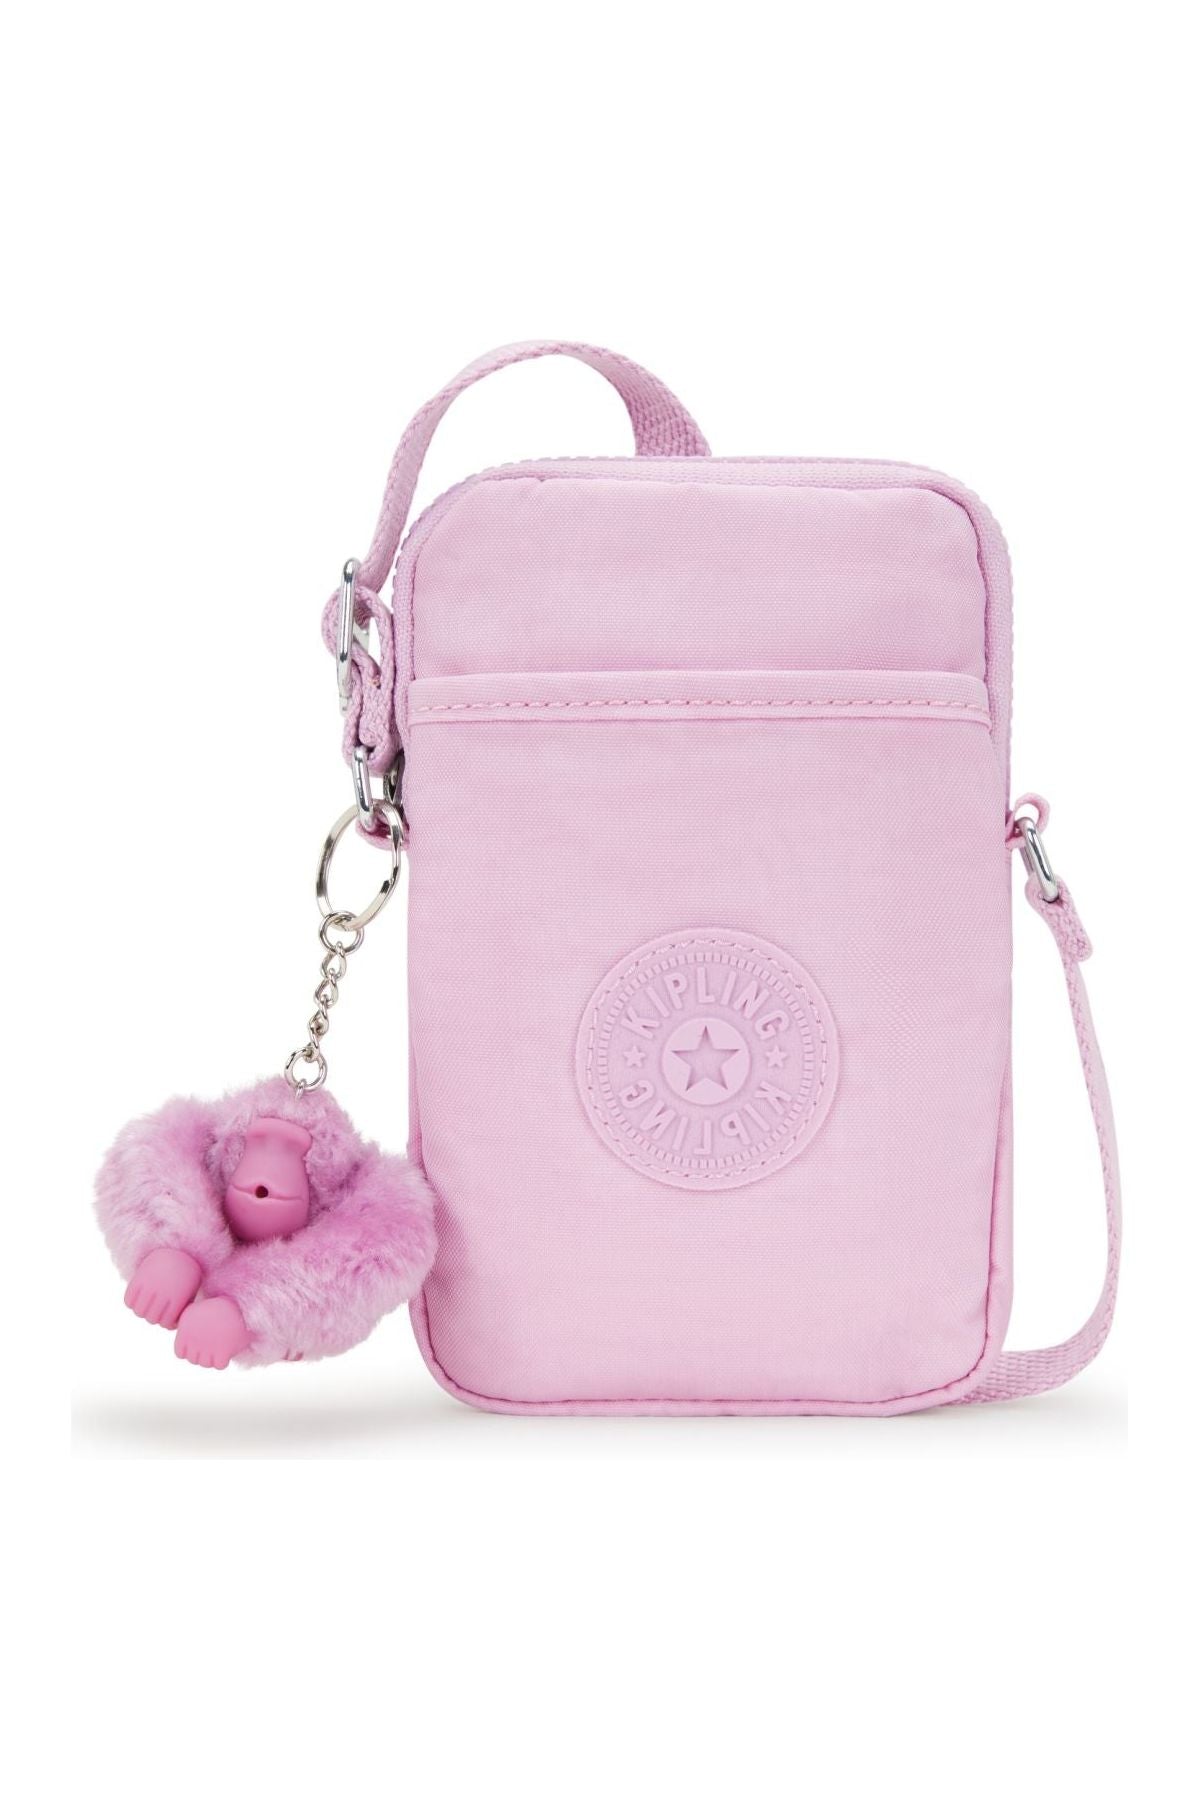 Kipling Tally Phone Handbag in Blooming pink